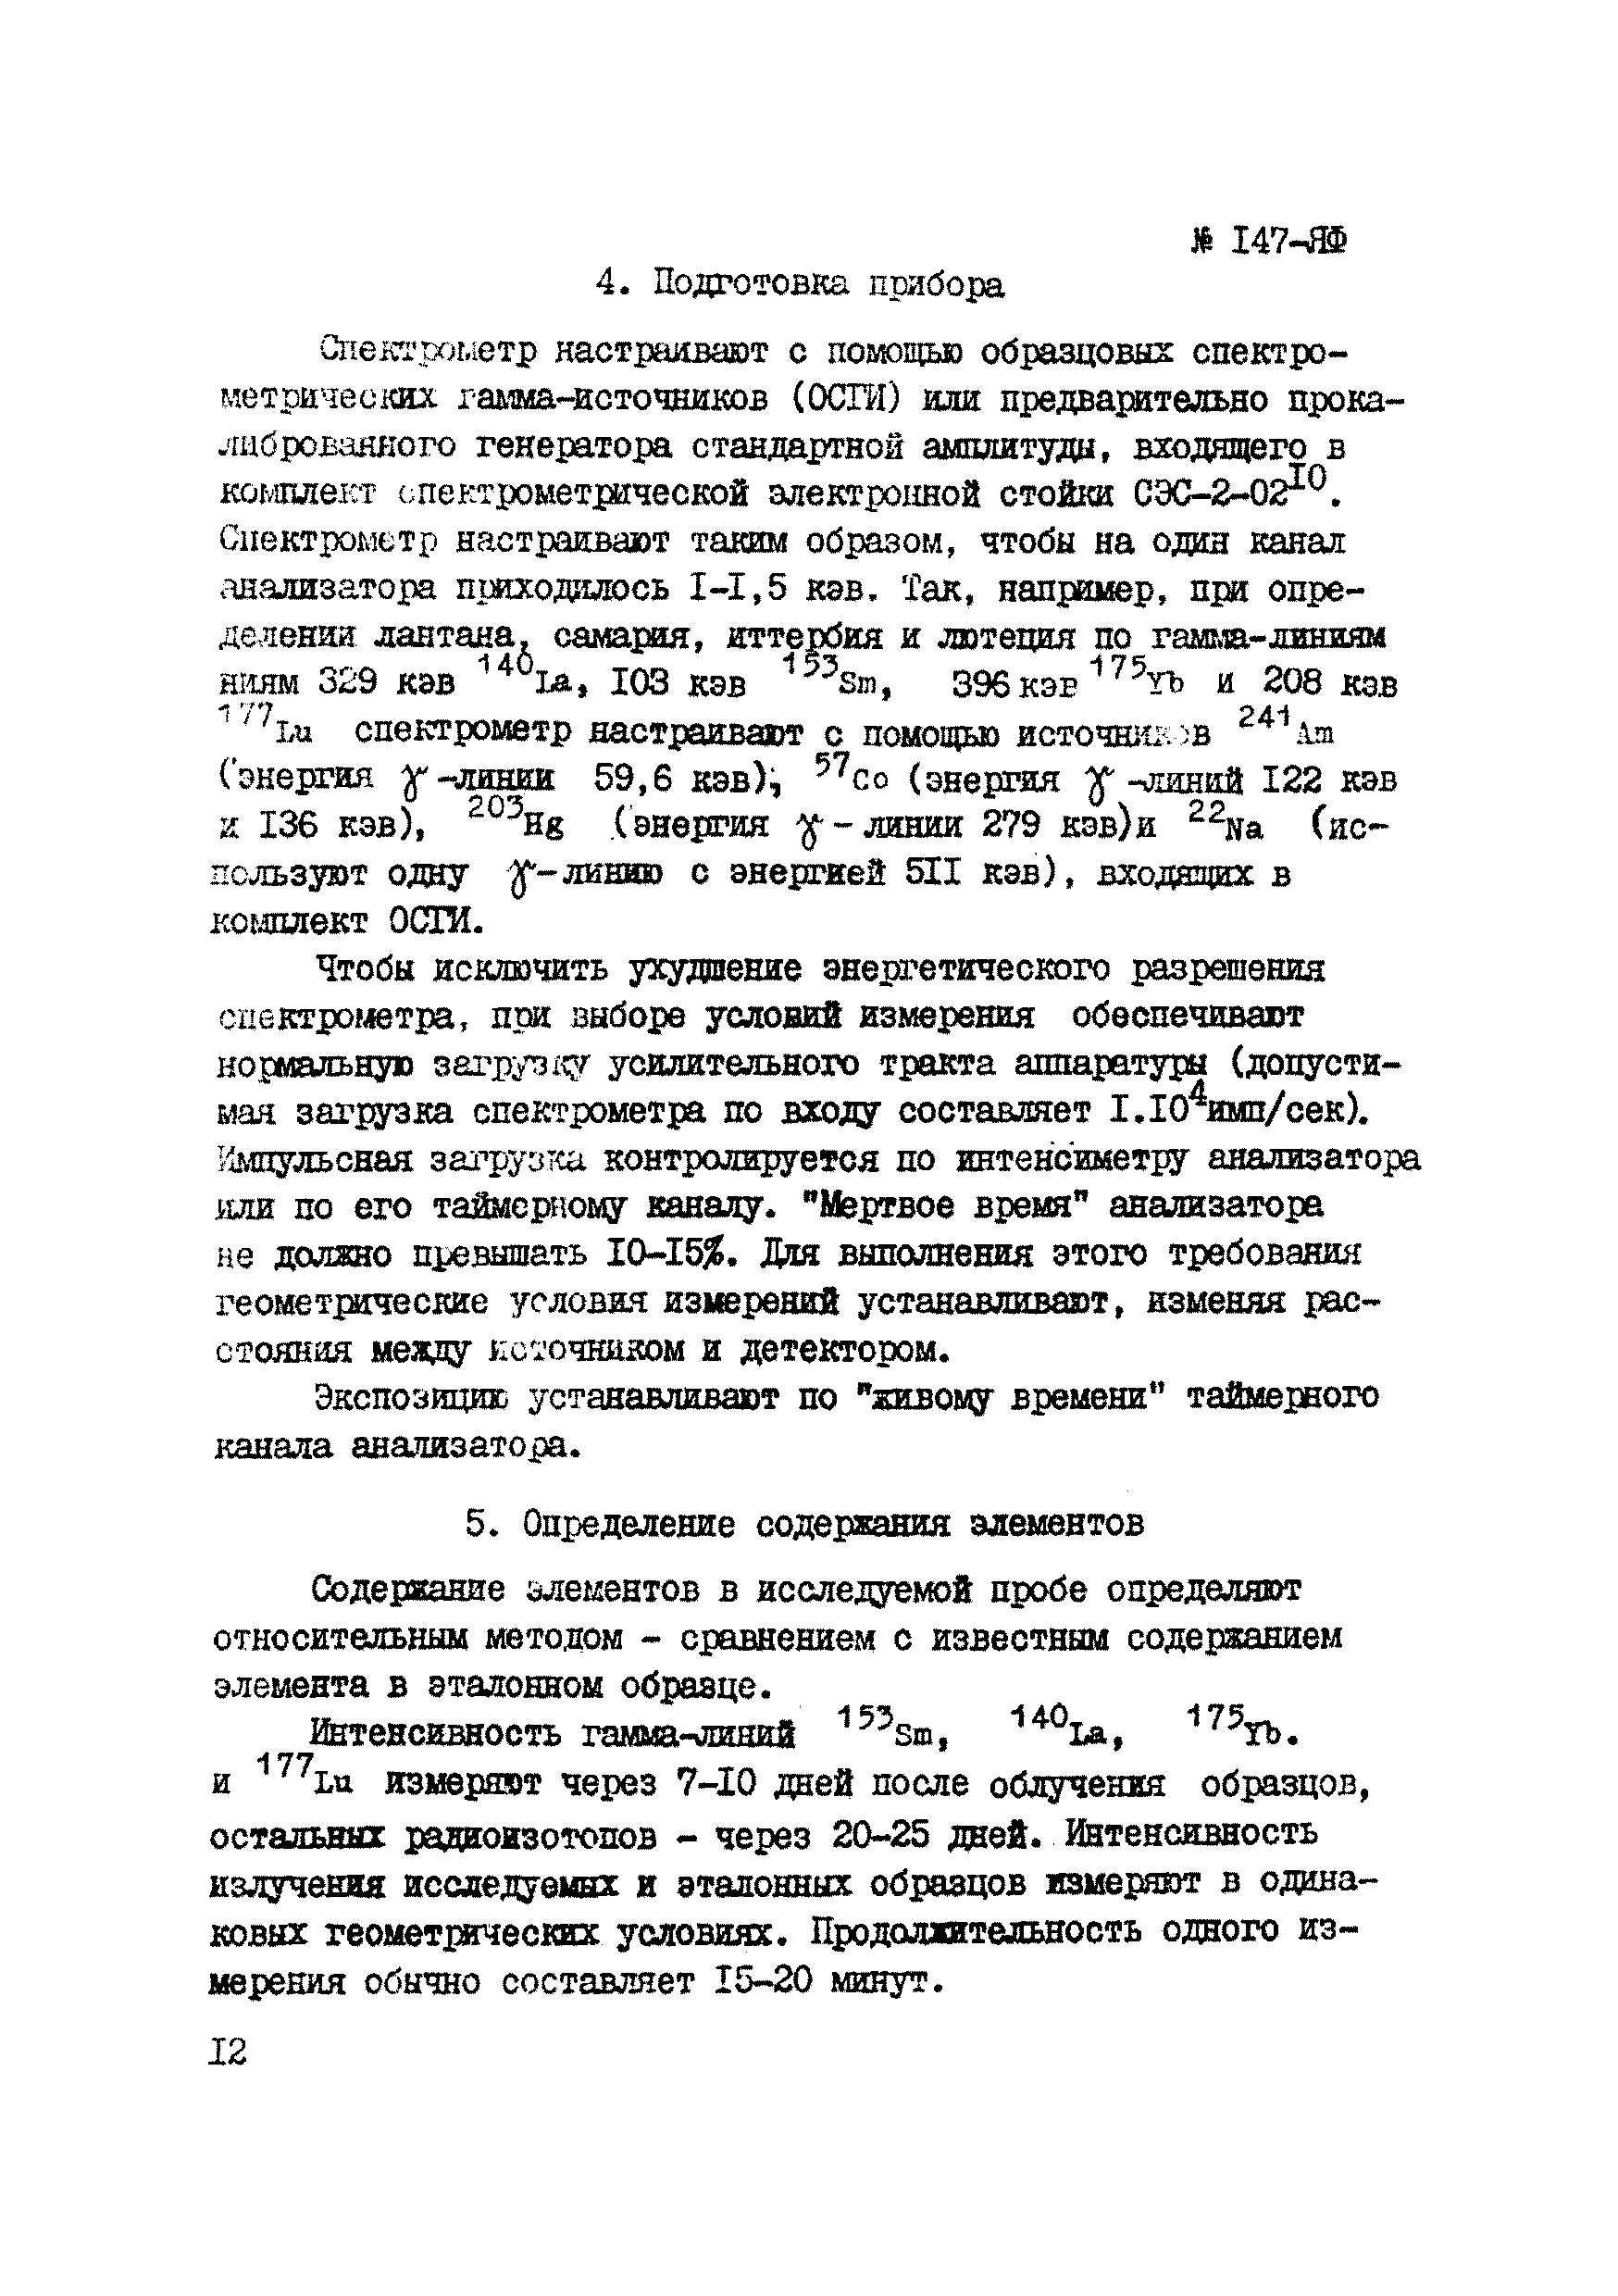 Инструкция НСАМ 147-ЯФ